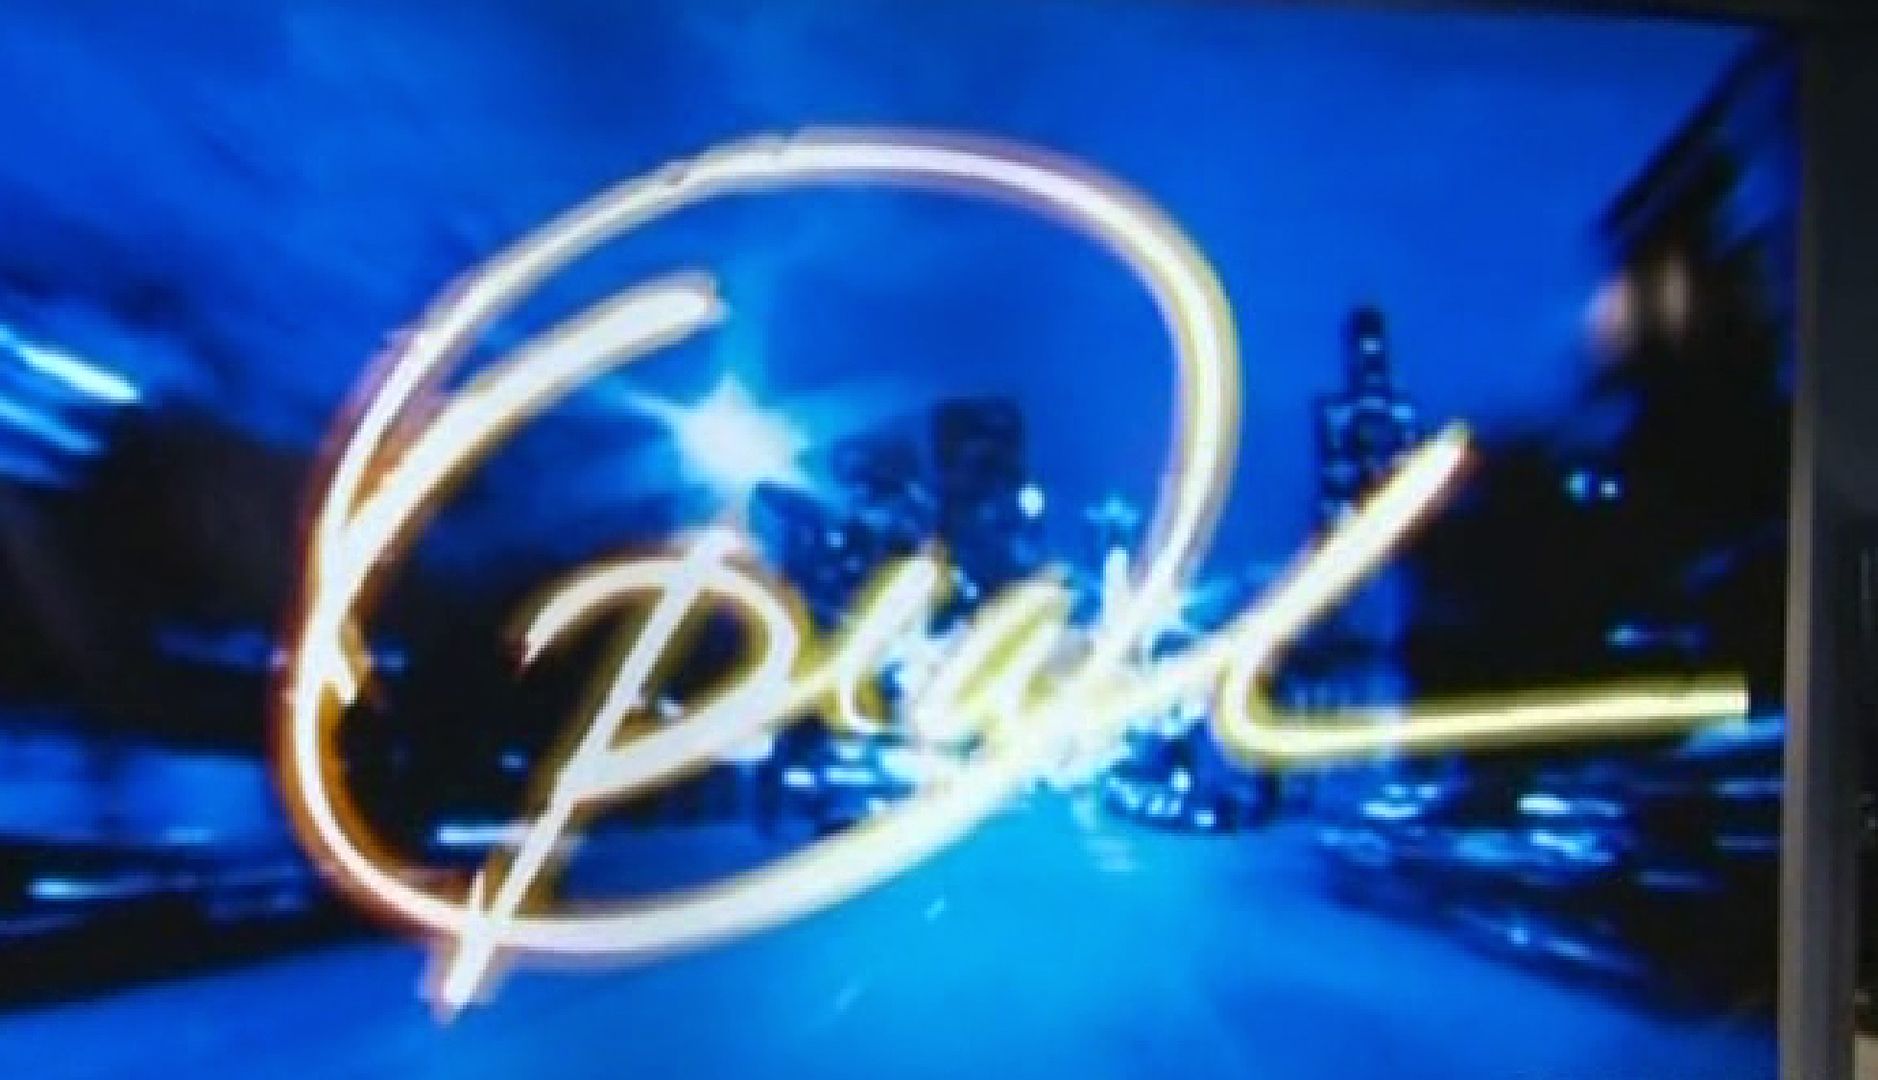 oprah-winfrey-show-logo_zpsb5a85910.jpg